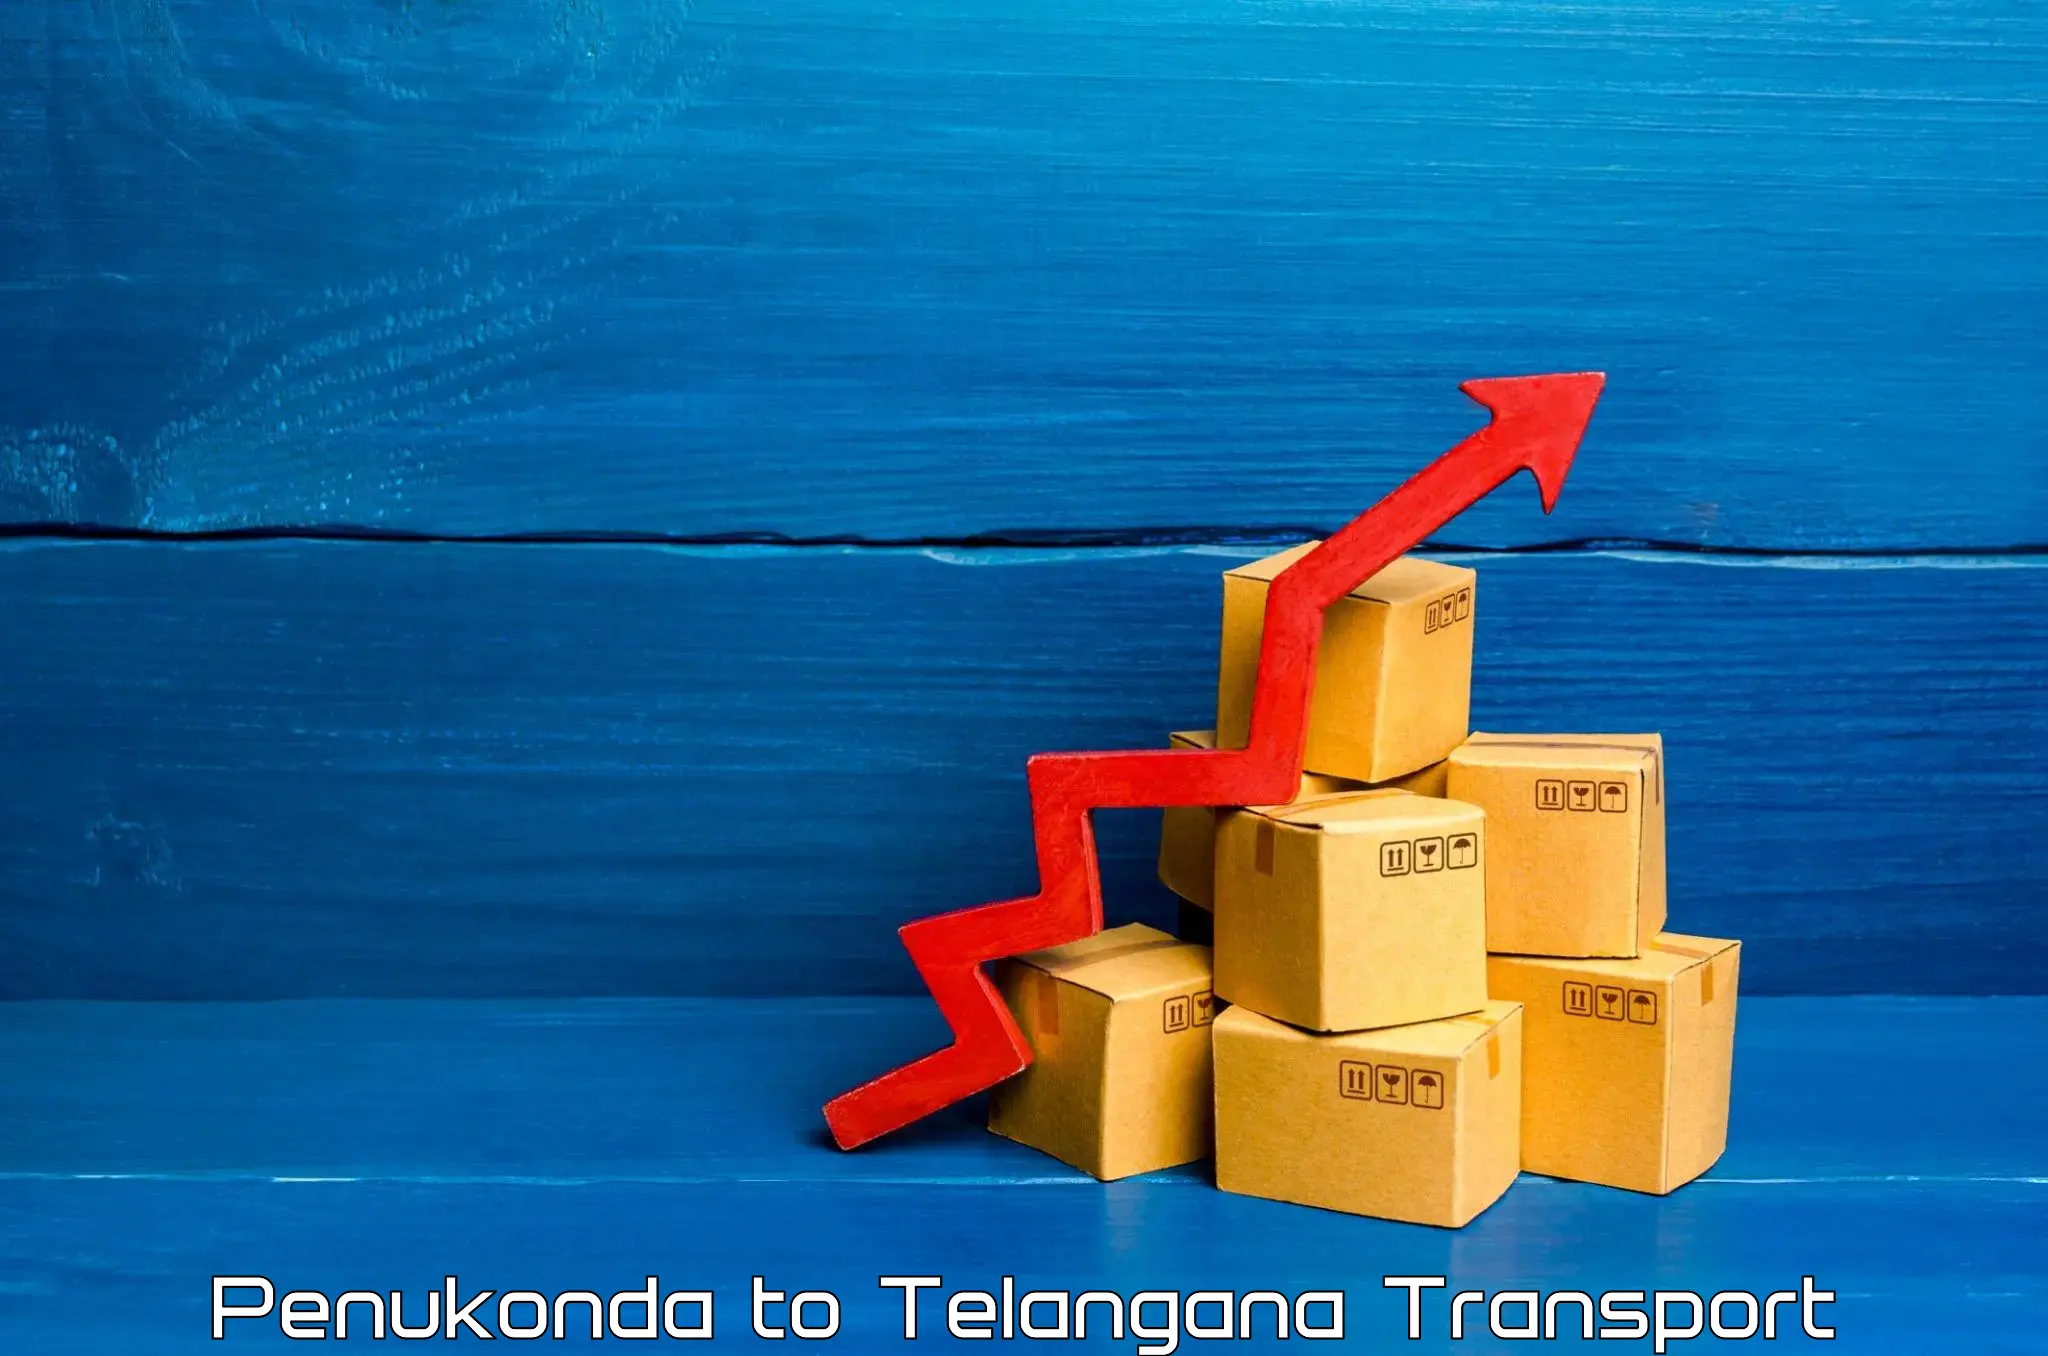 Container transport service Penukonda to Shadnagar